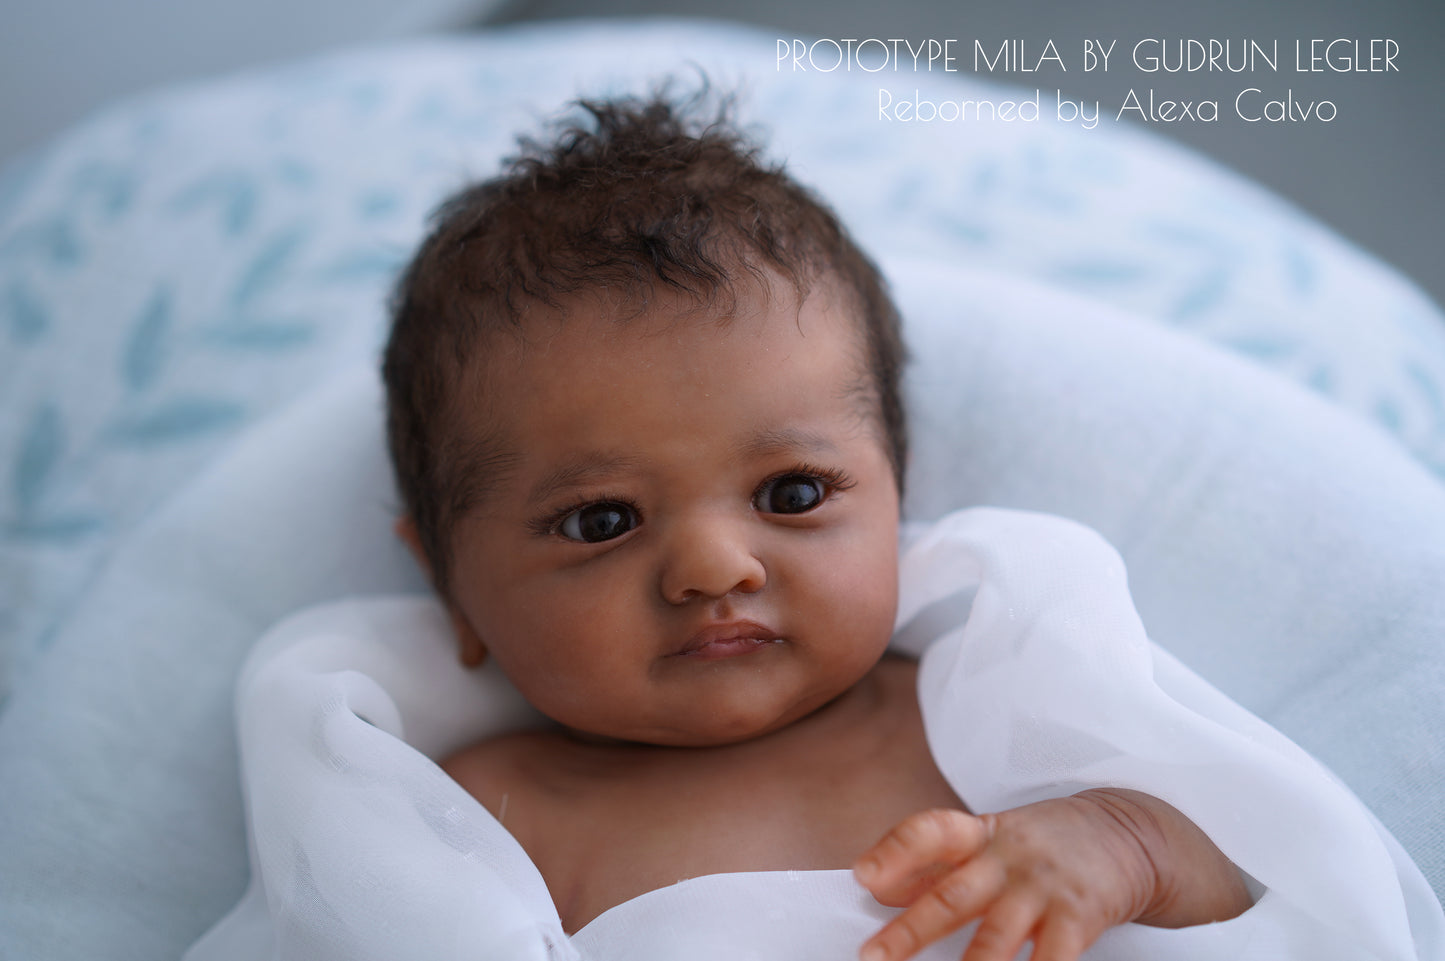 Baby Mila - Prototipo de Gudrun Legler, Reborn de Alexa Calvo